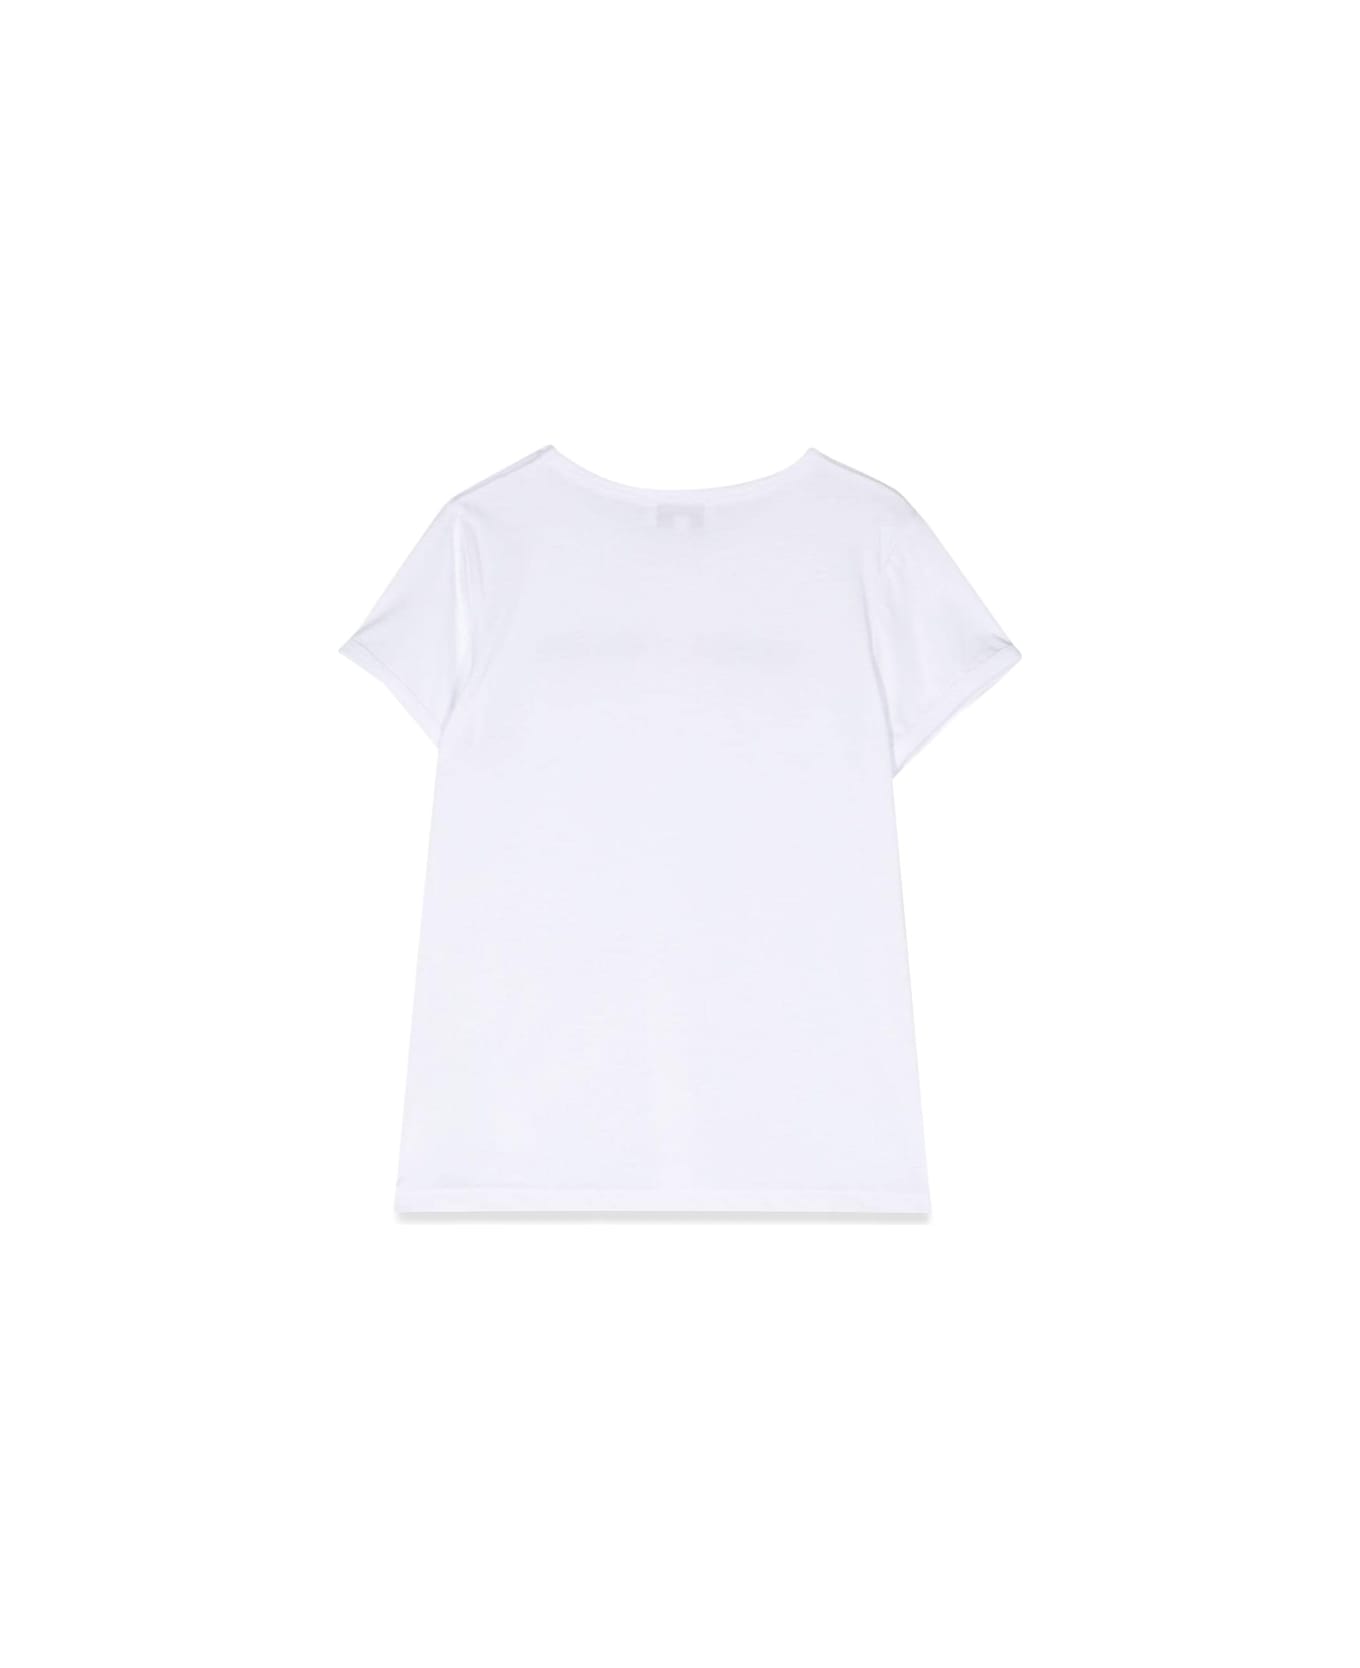 Sonia Rykiel T-shirt Logo Contrasting Profiles - WHITE Tシャツ＆ポロシャツ